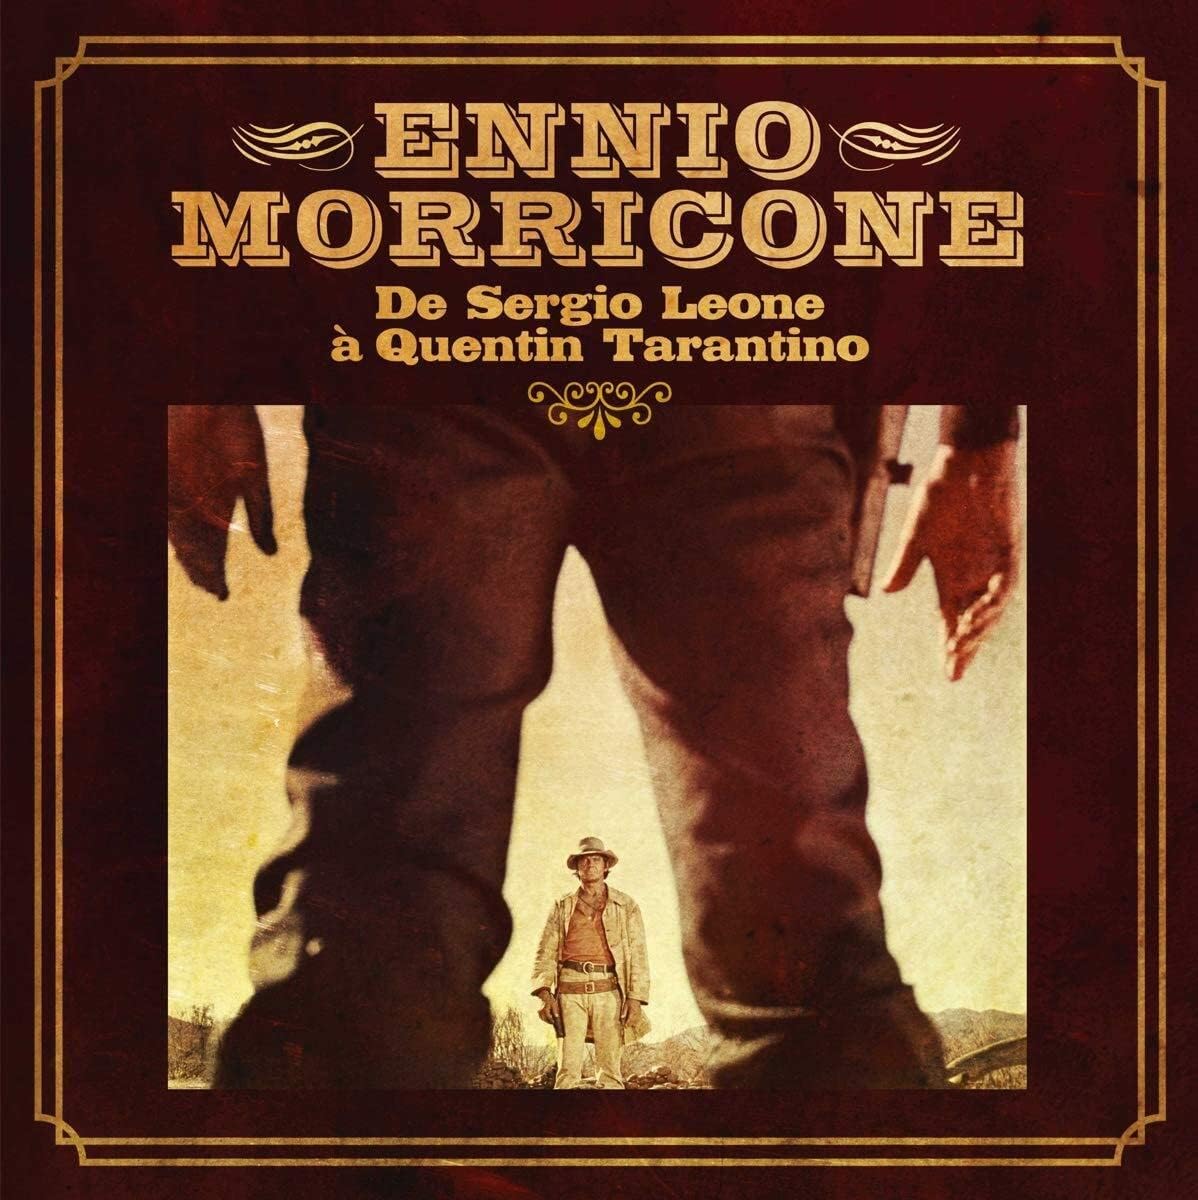 Ennio Morricone - Da Sergio Leone a Quentin Tarantino (Vinile 180gr.)